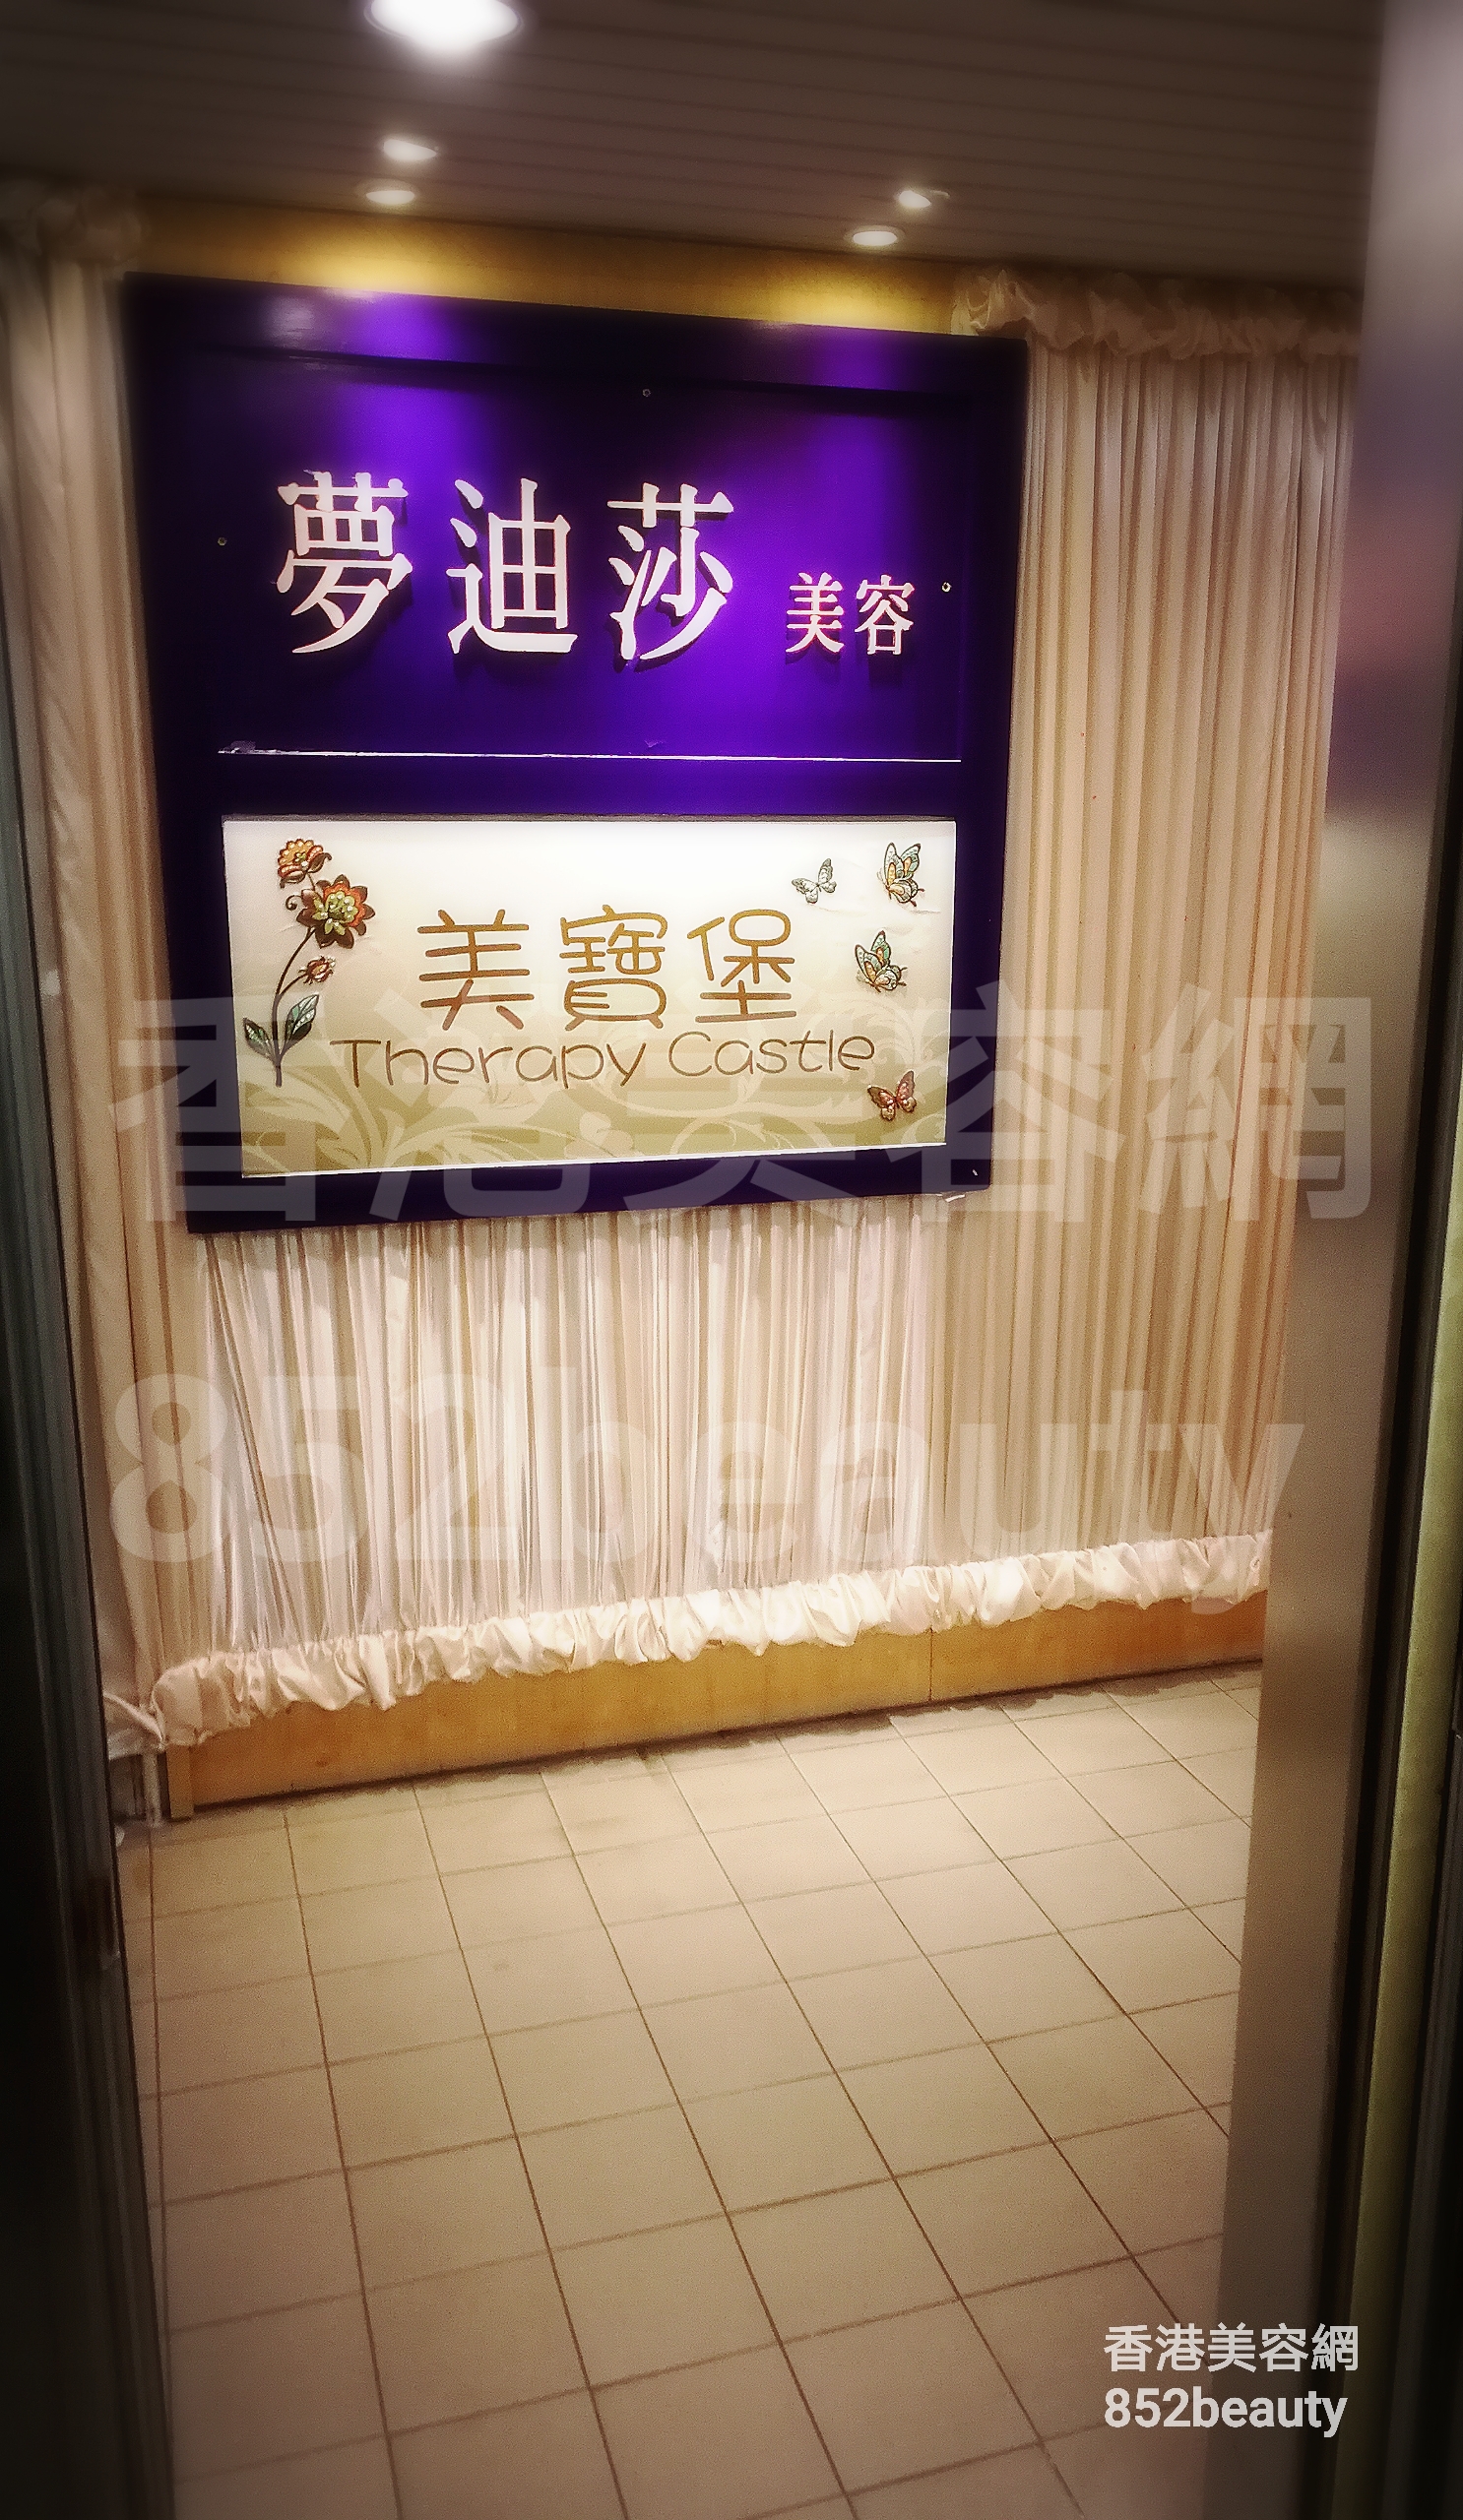 香港美容網 Hong Kong Beauty Salon 美容院 / 美容師: 夢迪莎 美容